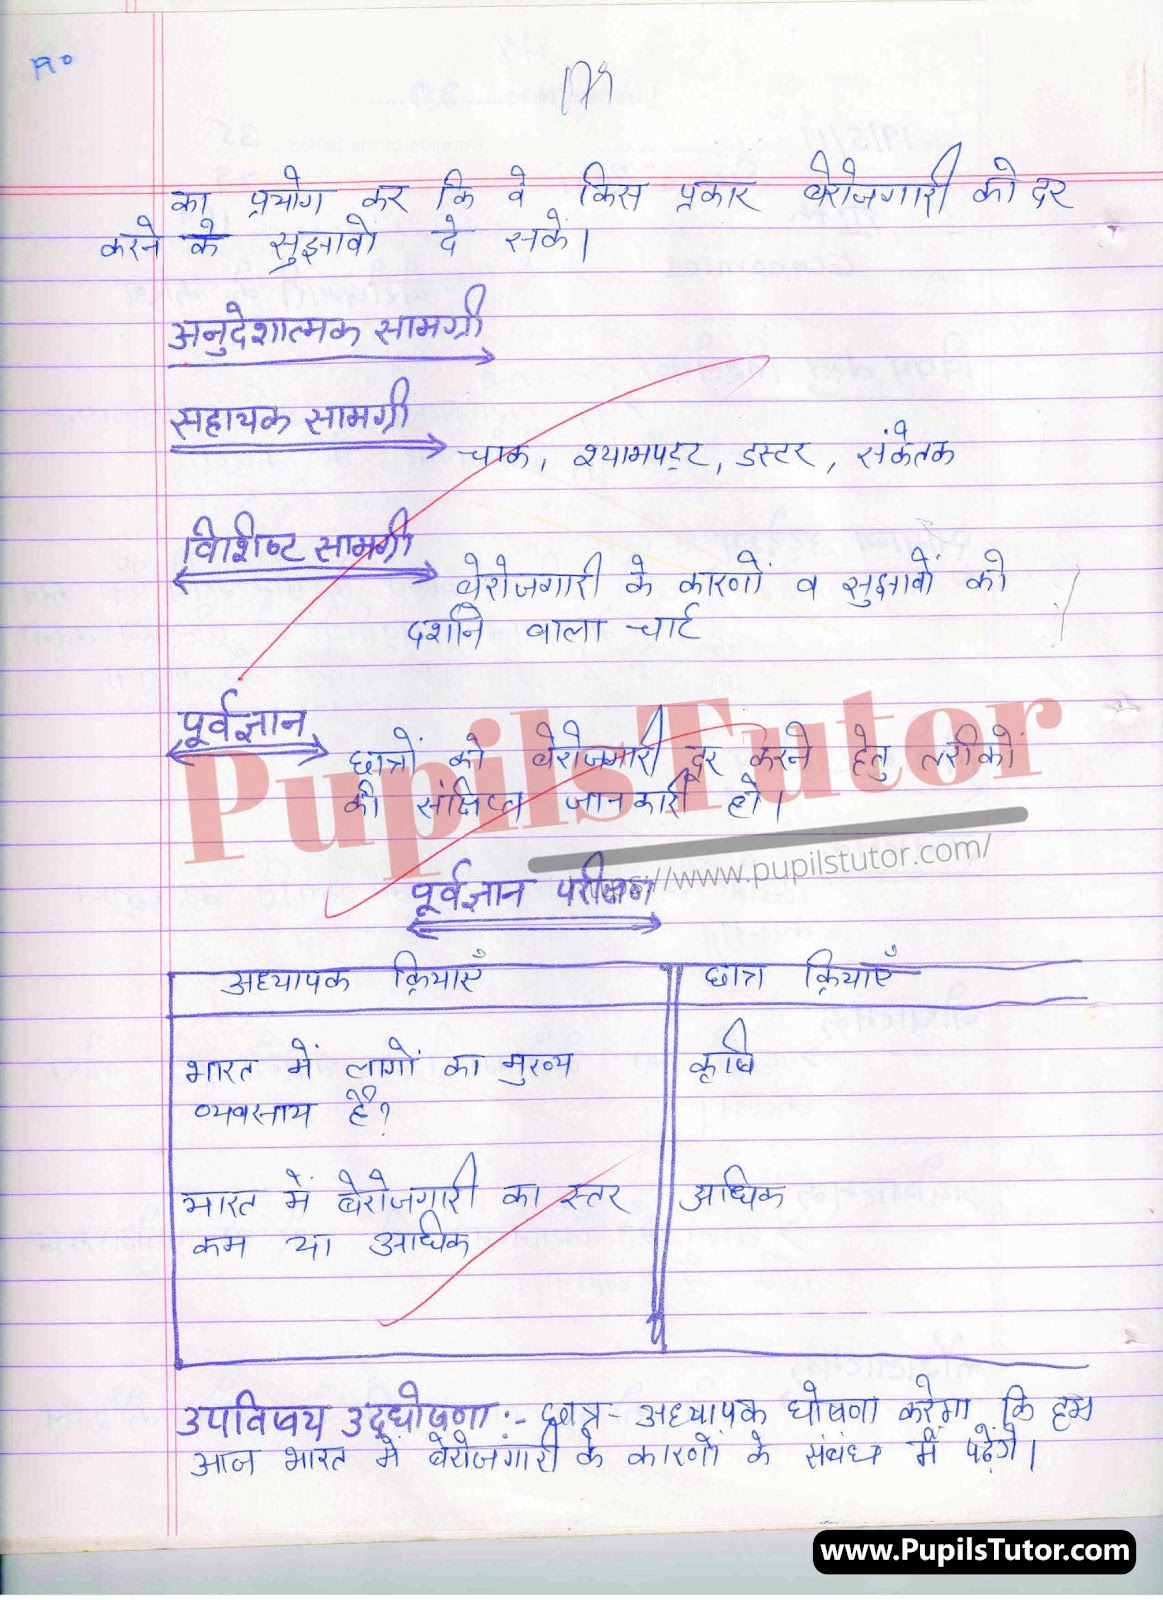 School Teaching Practice Skill Berojgari Lesson Plan For B.Ed And Deled In Hindi Free Download PDF And PPT (Power Point Presentation And Slides) | बीएड और डीएलएड के लिए स्कूल शिक्षण अभ्यास कौशल पर बेरोजगारी कक्षा 9वीं से 12 के लेसन प्लान की पीडीऍफ़ और पीपीटी फ्री में डाउनलोड करे| – (Page And PDF Number 2) – pupilstutor